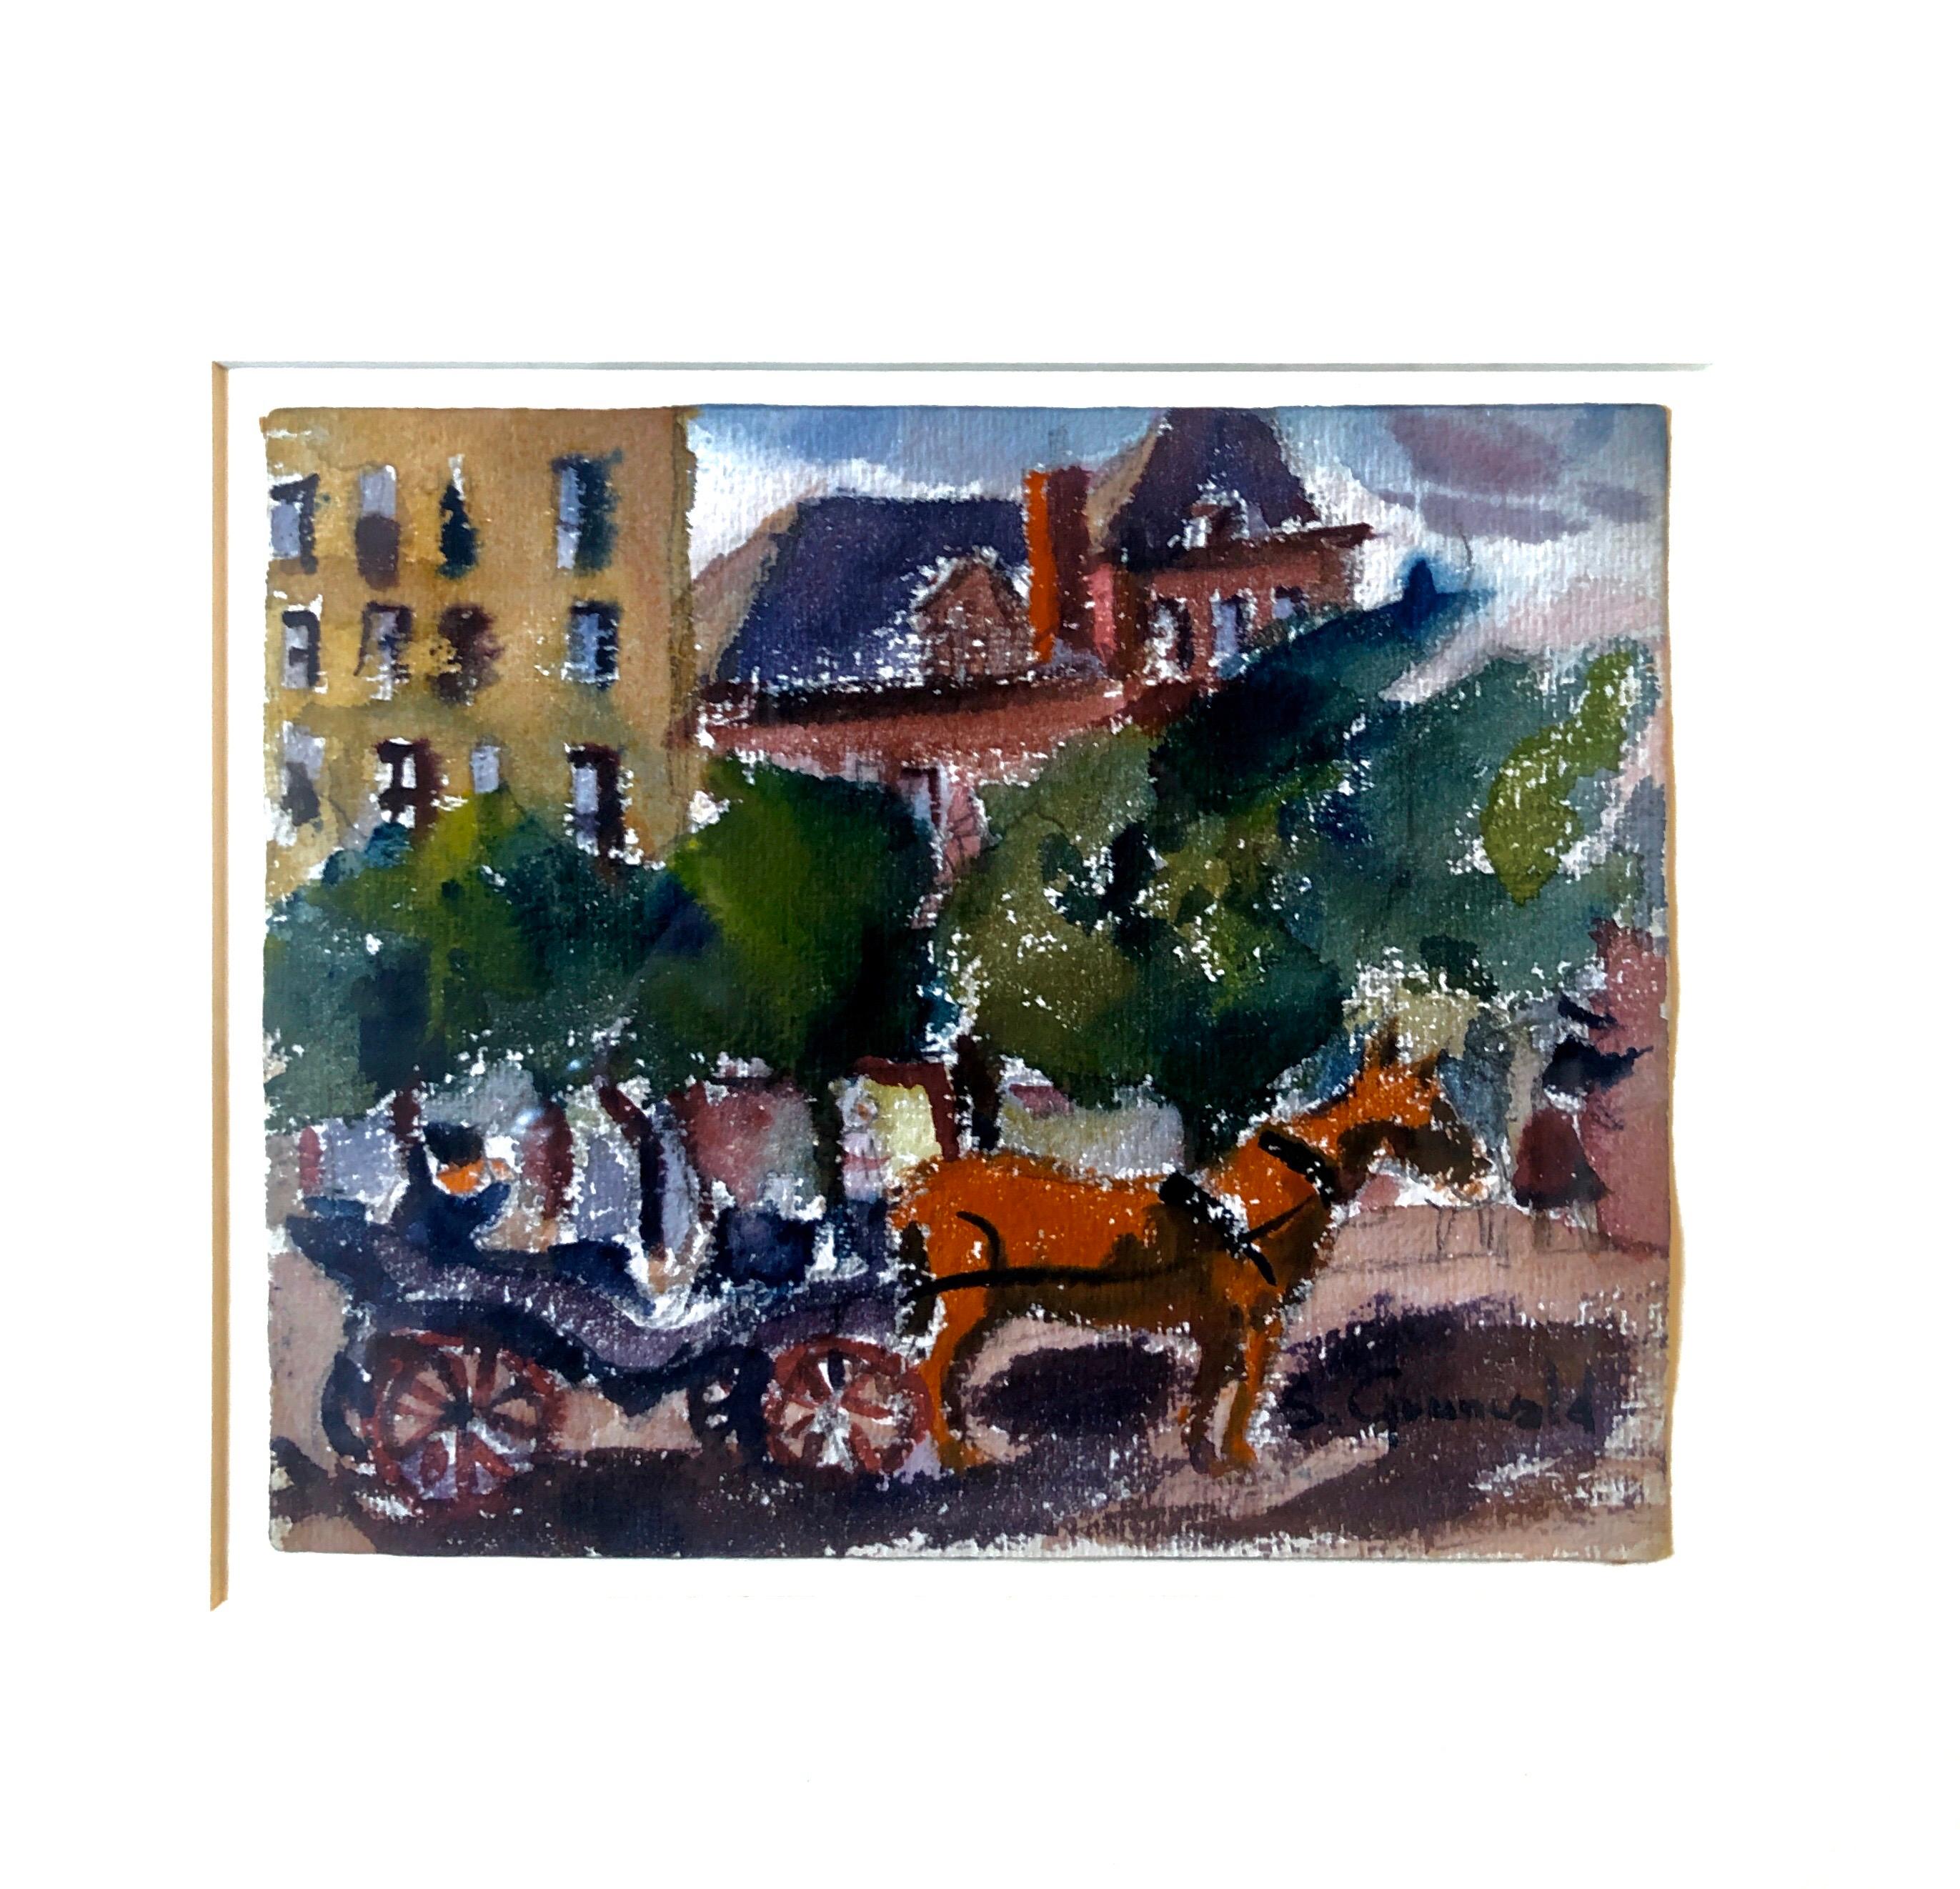 Cheval et Buggy 59th st. Manhattan (peinture fauviste de NYC à l'extérieur de Central Park) années 1940.
l'image est de 6.25 X 7.5 pouces. Signé à la main en bas à droite
Provenance : Galerie Greenwich (Greenwich CT)

Samuel Grunvald était un